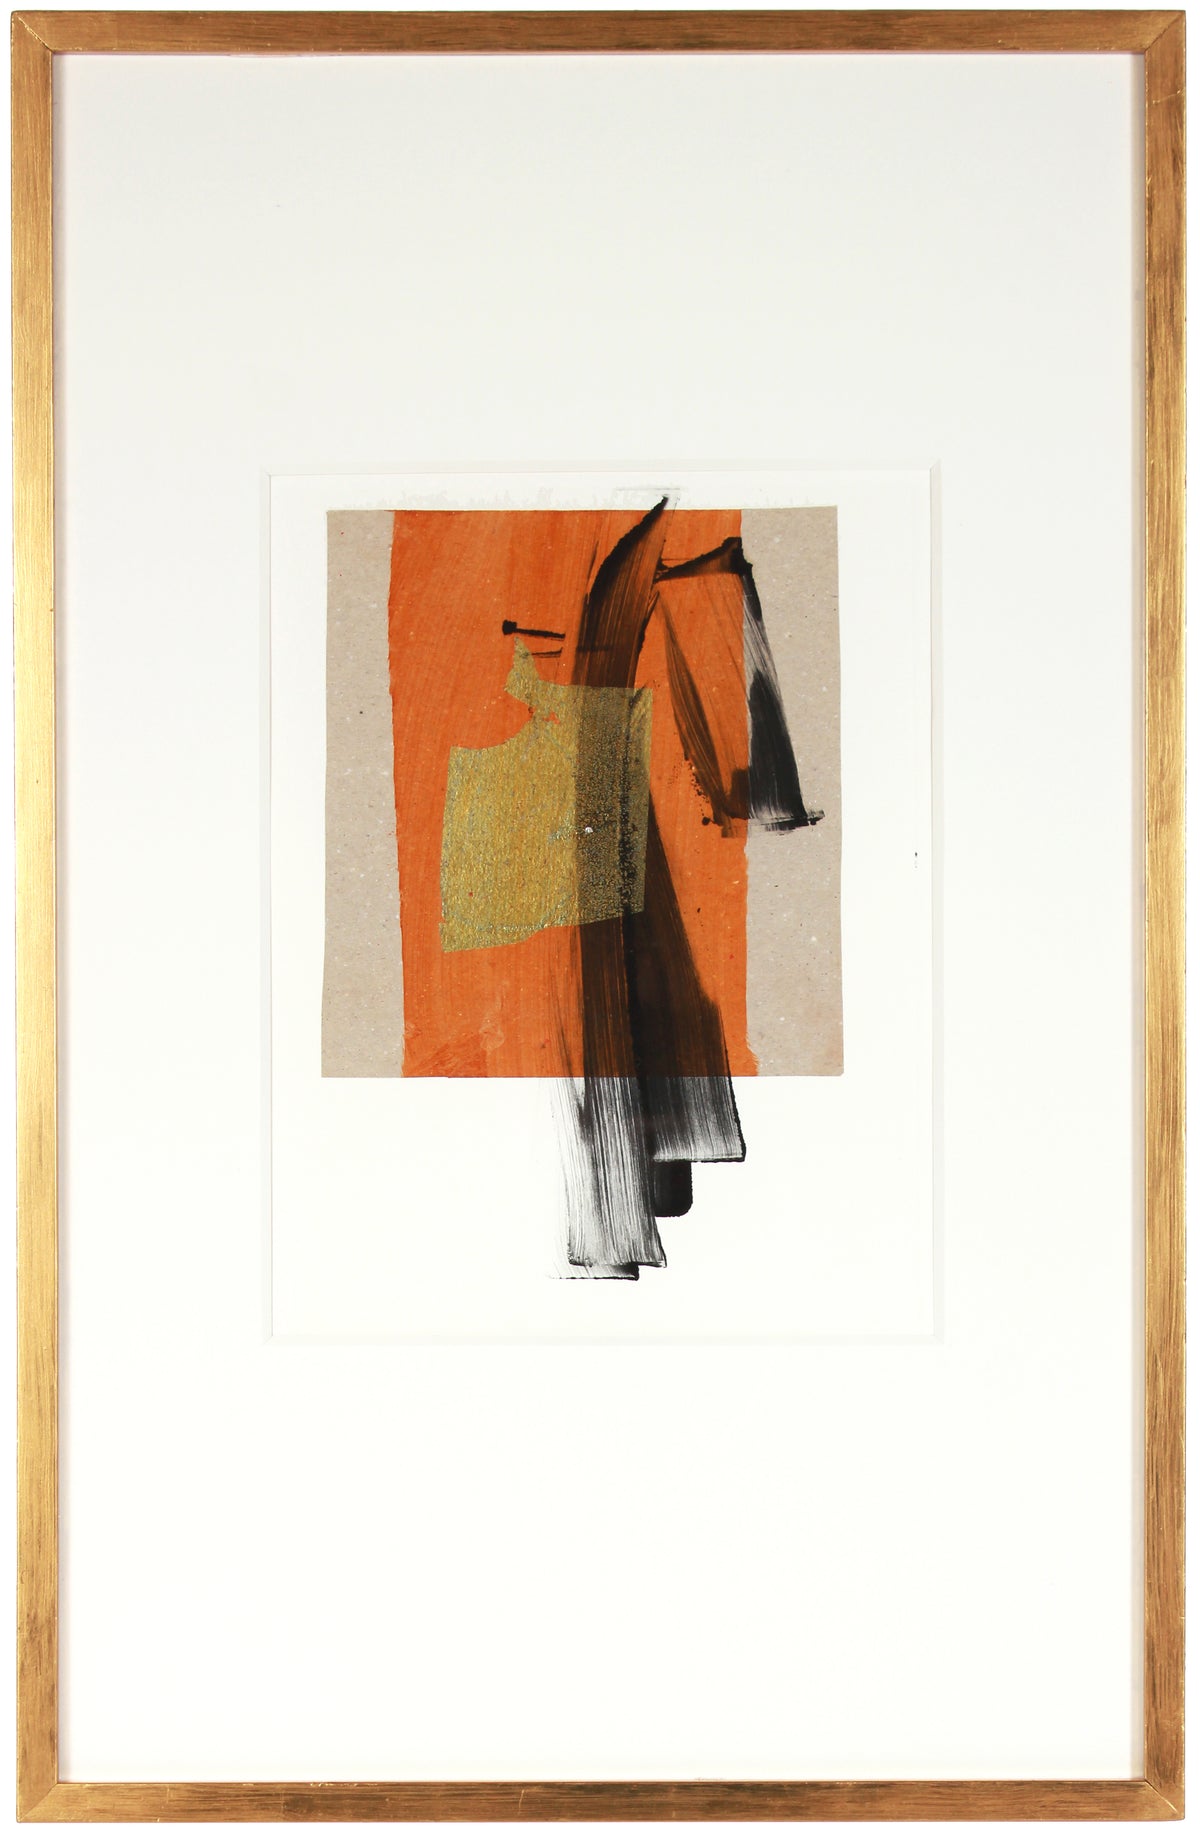 Warm Modernist Orange &amp; Gold Abstract &lt;br&gt;1990-2000s Monotype &amp; Collage &lt;br&gt;&lt;br&gt;#A7632